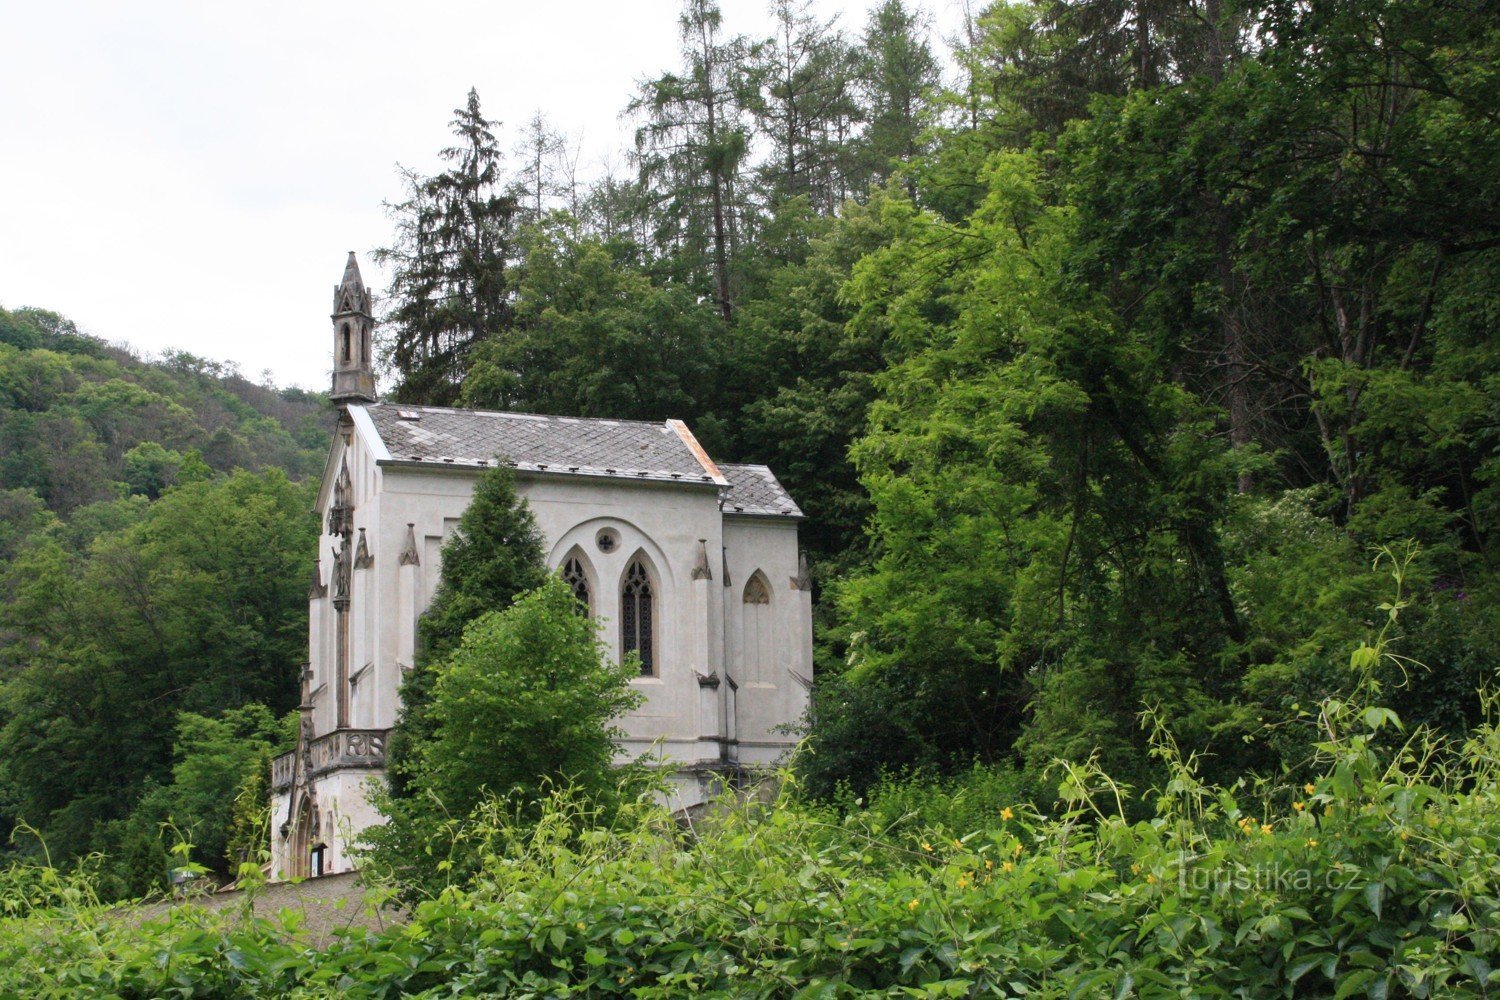 St. Jan pod Skalou 和墓地教堂 - 圣约翰教堂马克西米利安